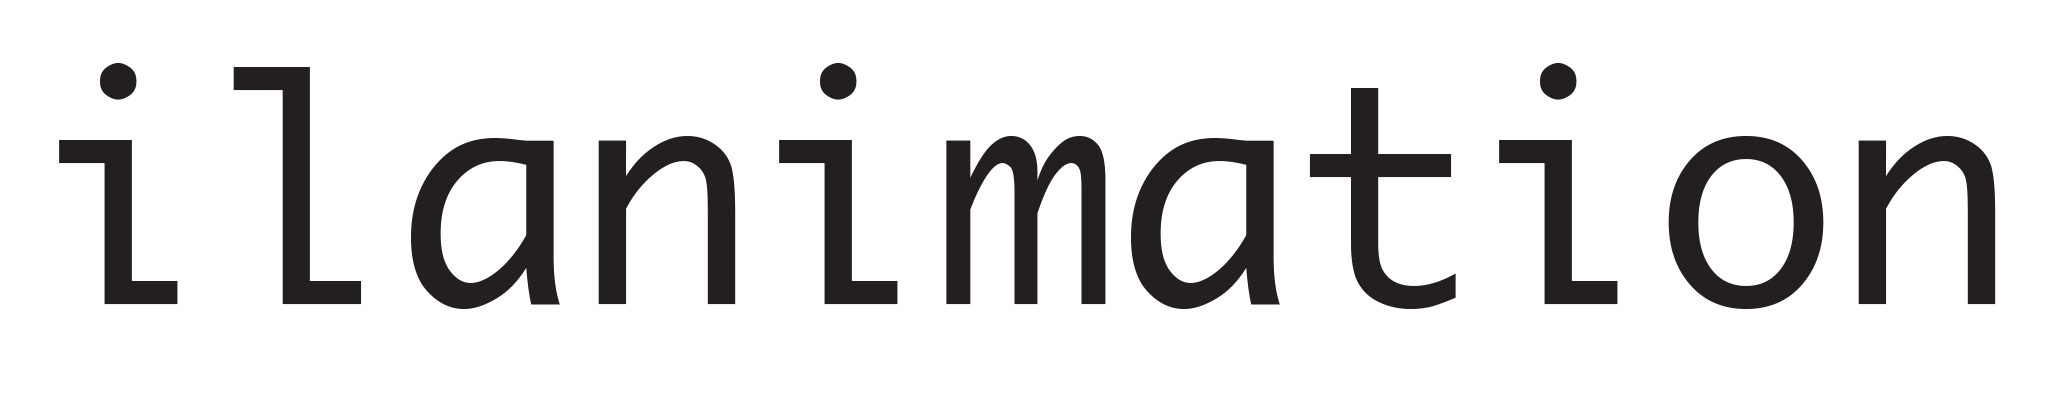 ilanimation Logo